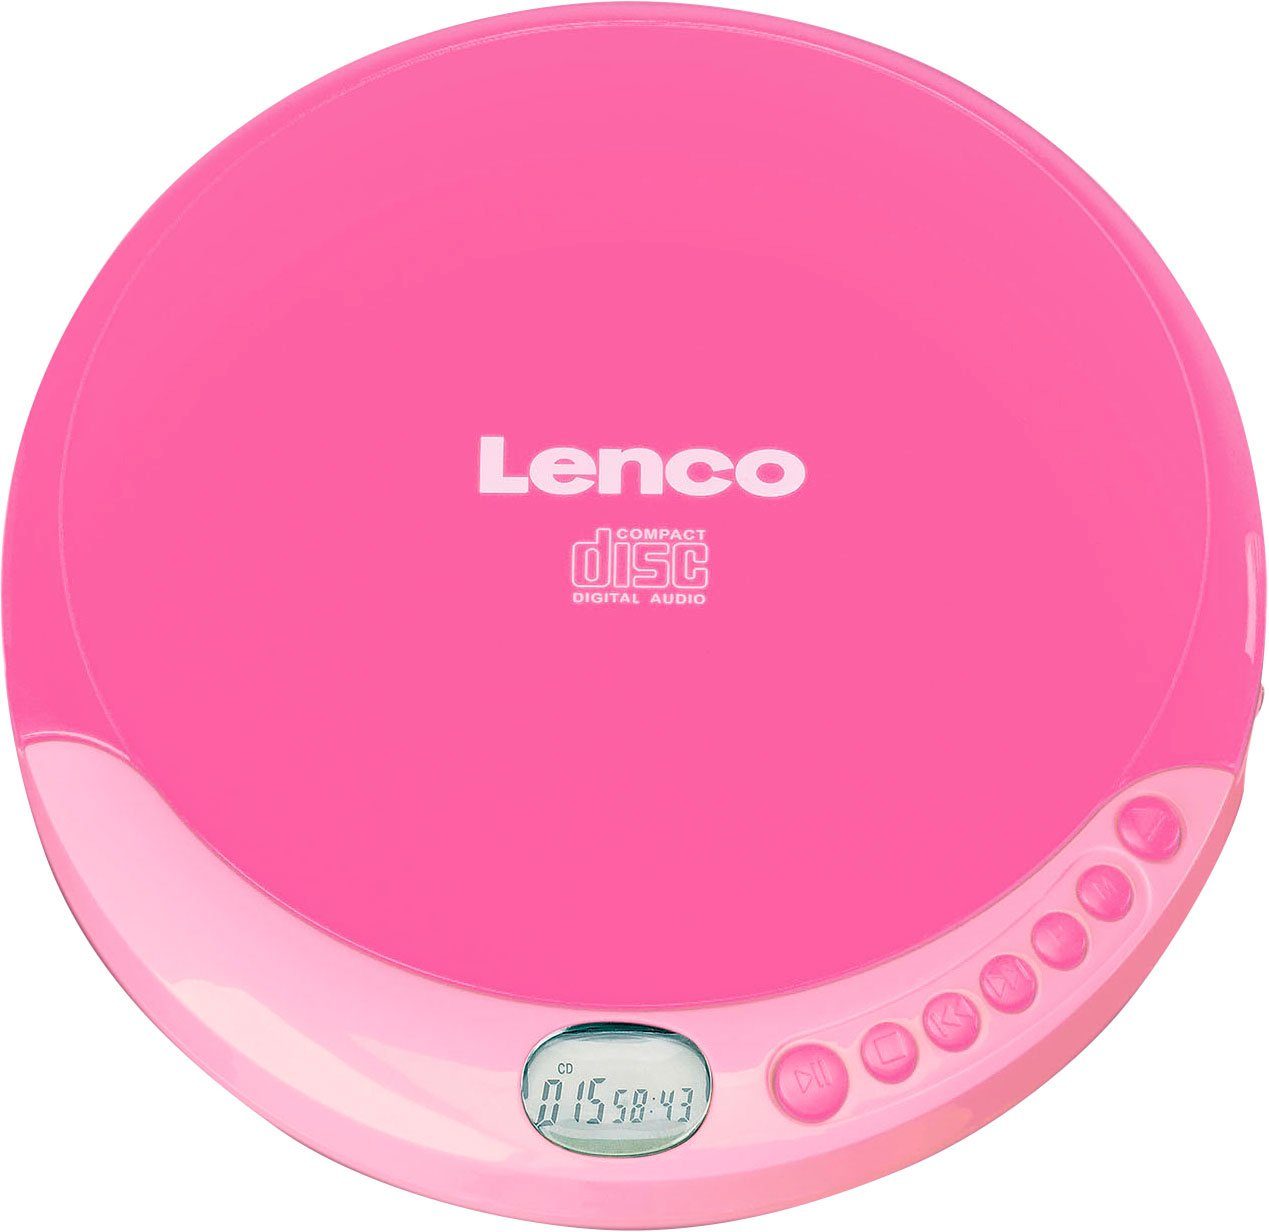 Lenco CD-011 CD-Player rosa